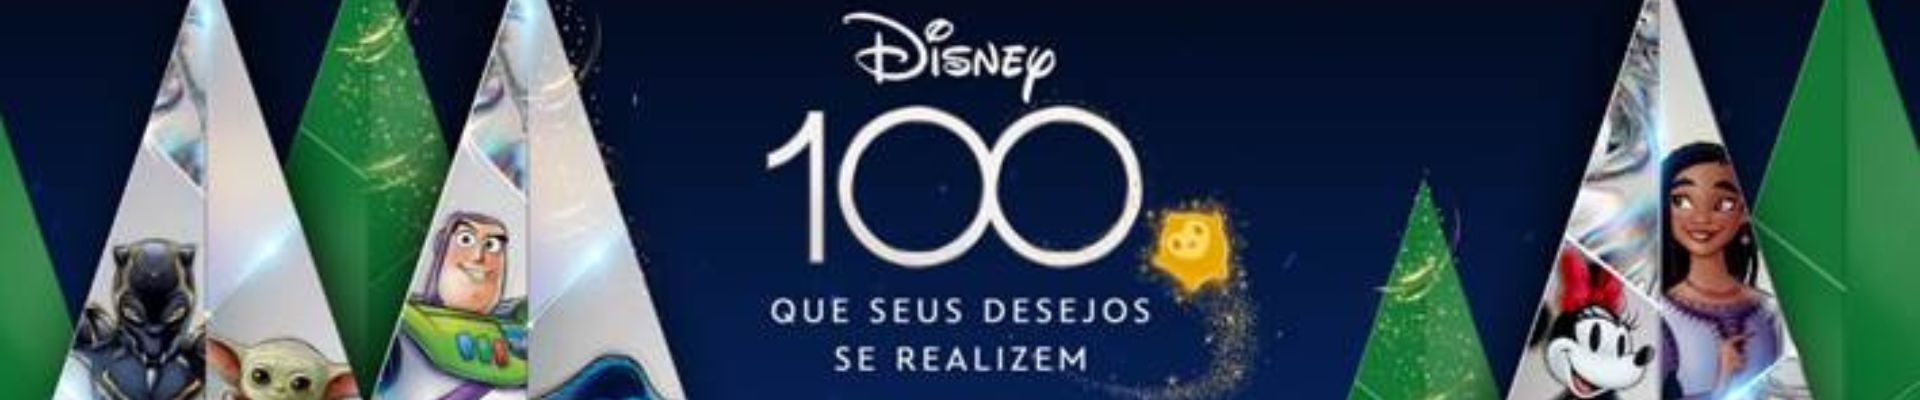 Nova Campanha da Disney para o fim do ano